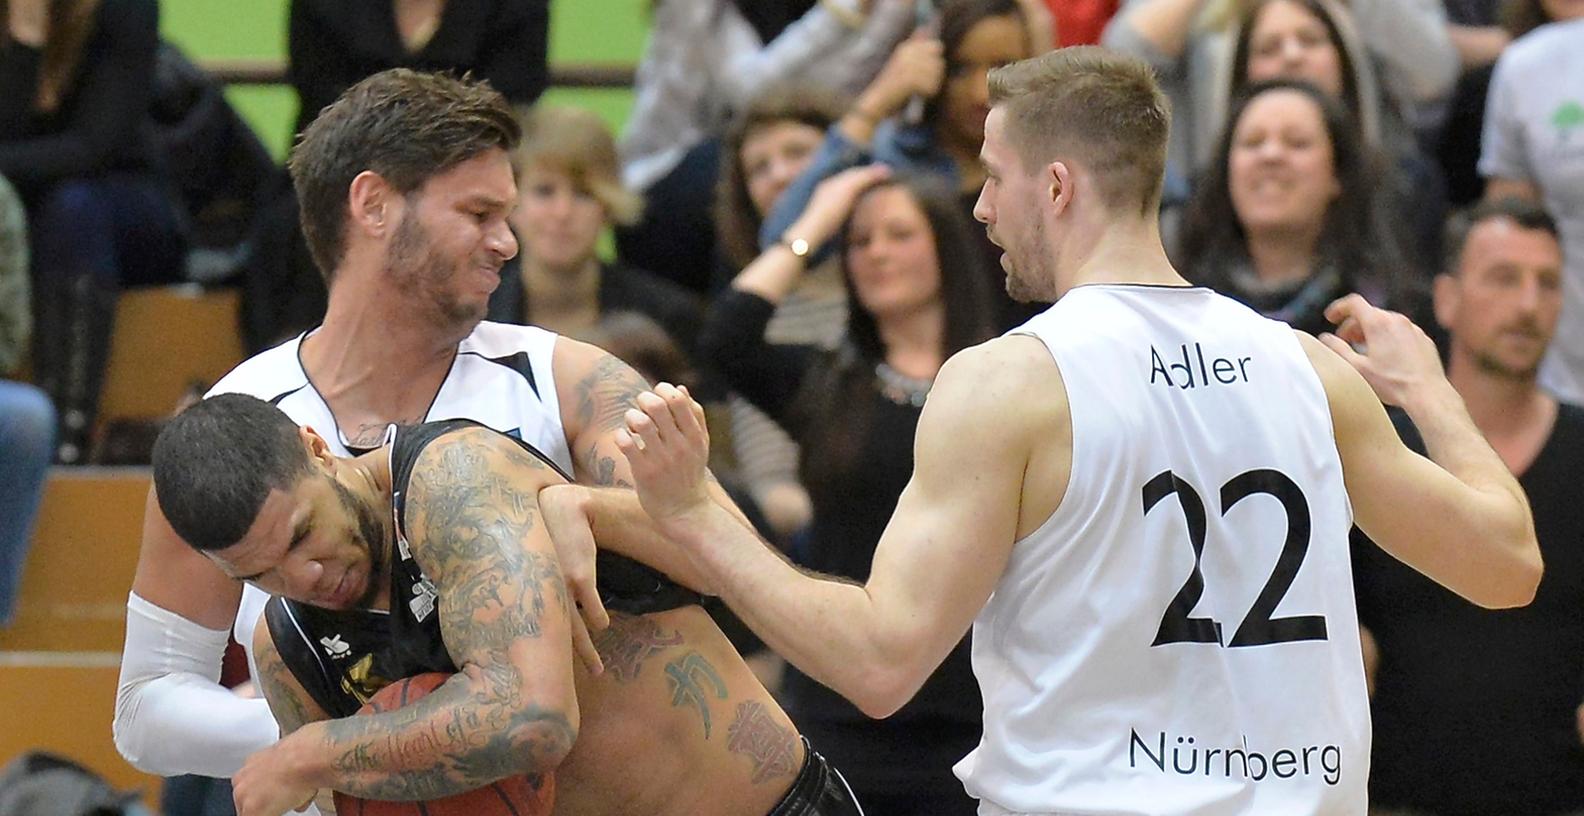 Nürnbergs Basketballer verloren, aber glauben an Play-offs